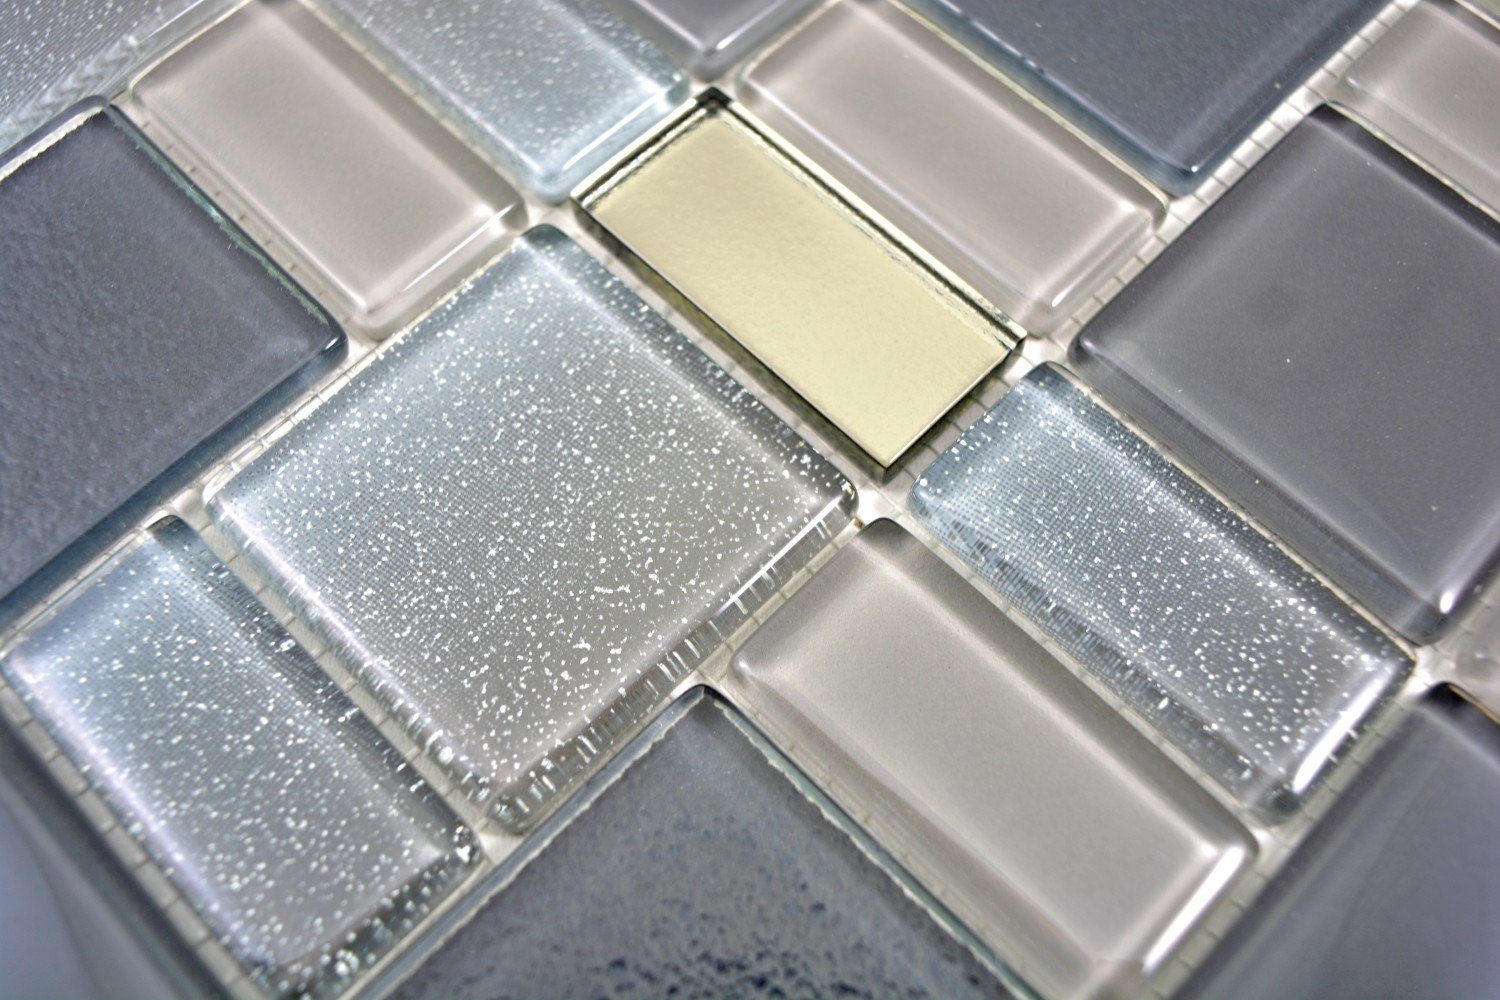 Mosani Mosaikfliesen Glasmosaik Mosaikfliesen Fliesenspiegel cream grau